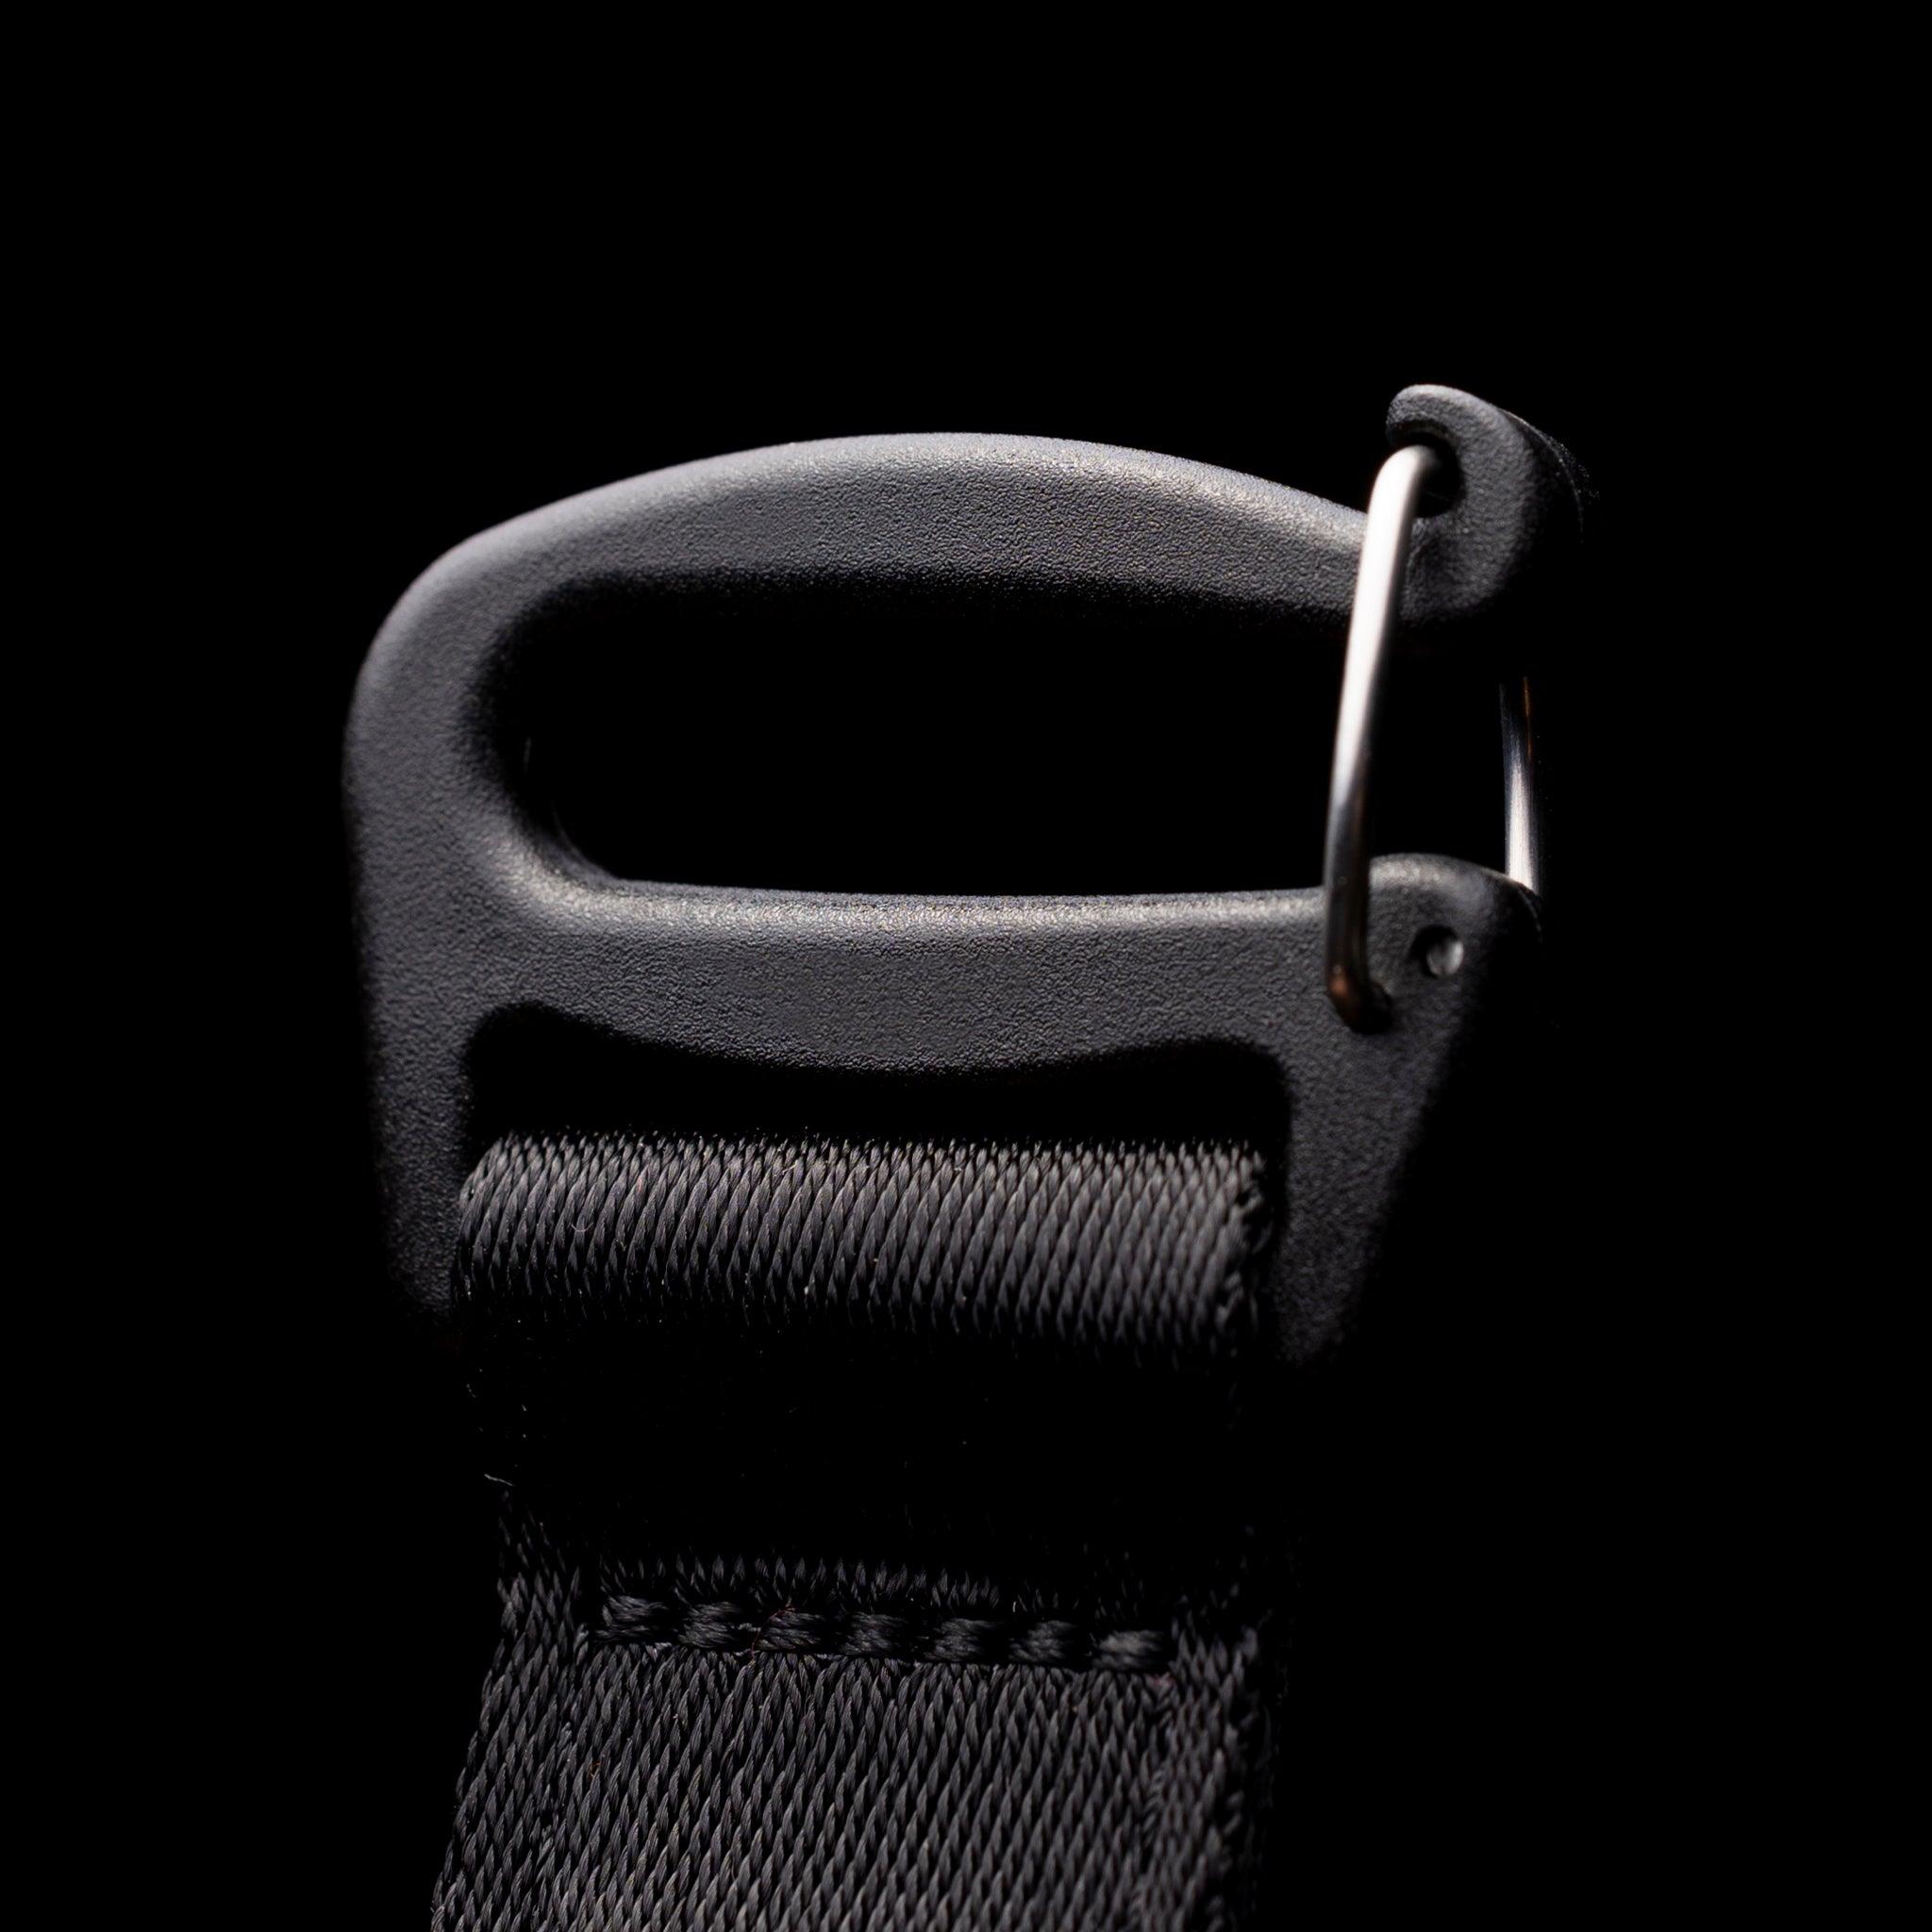 Shoulder strap, camera strap, accessory strap